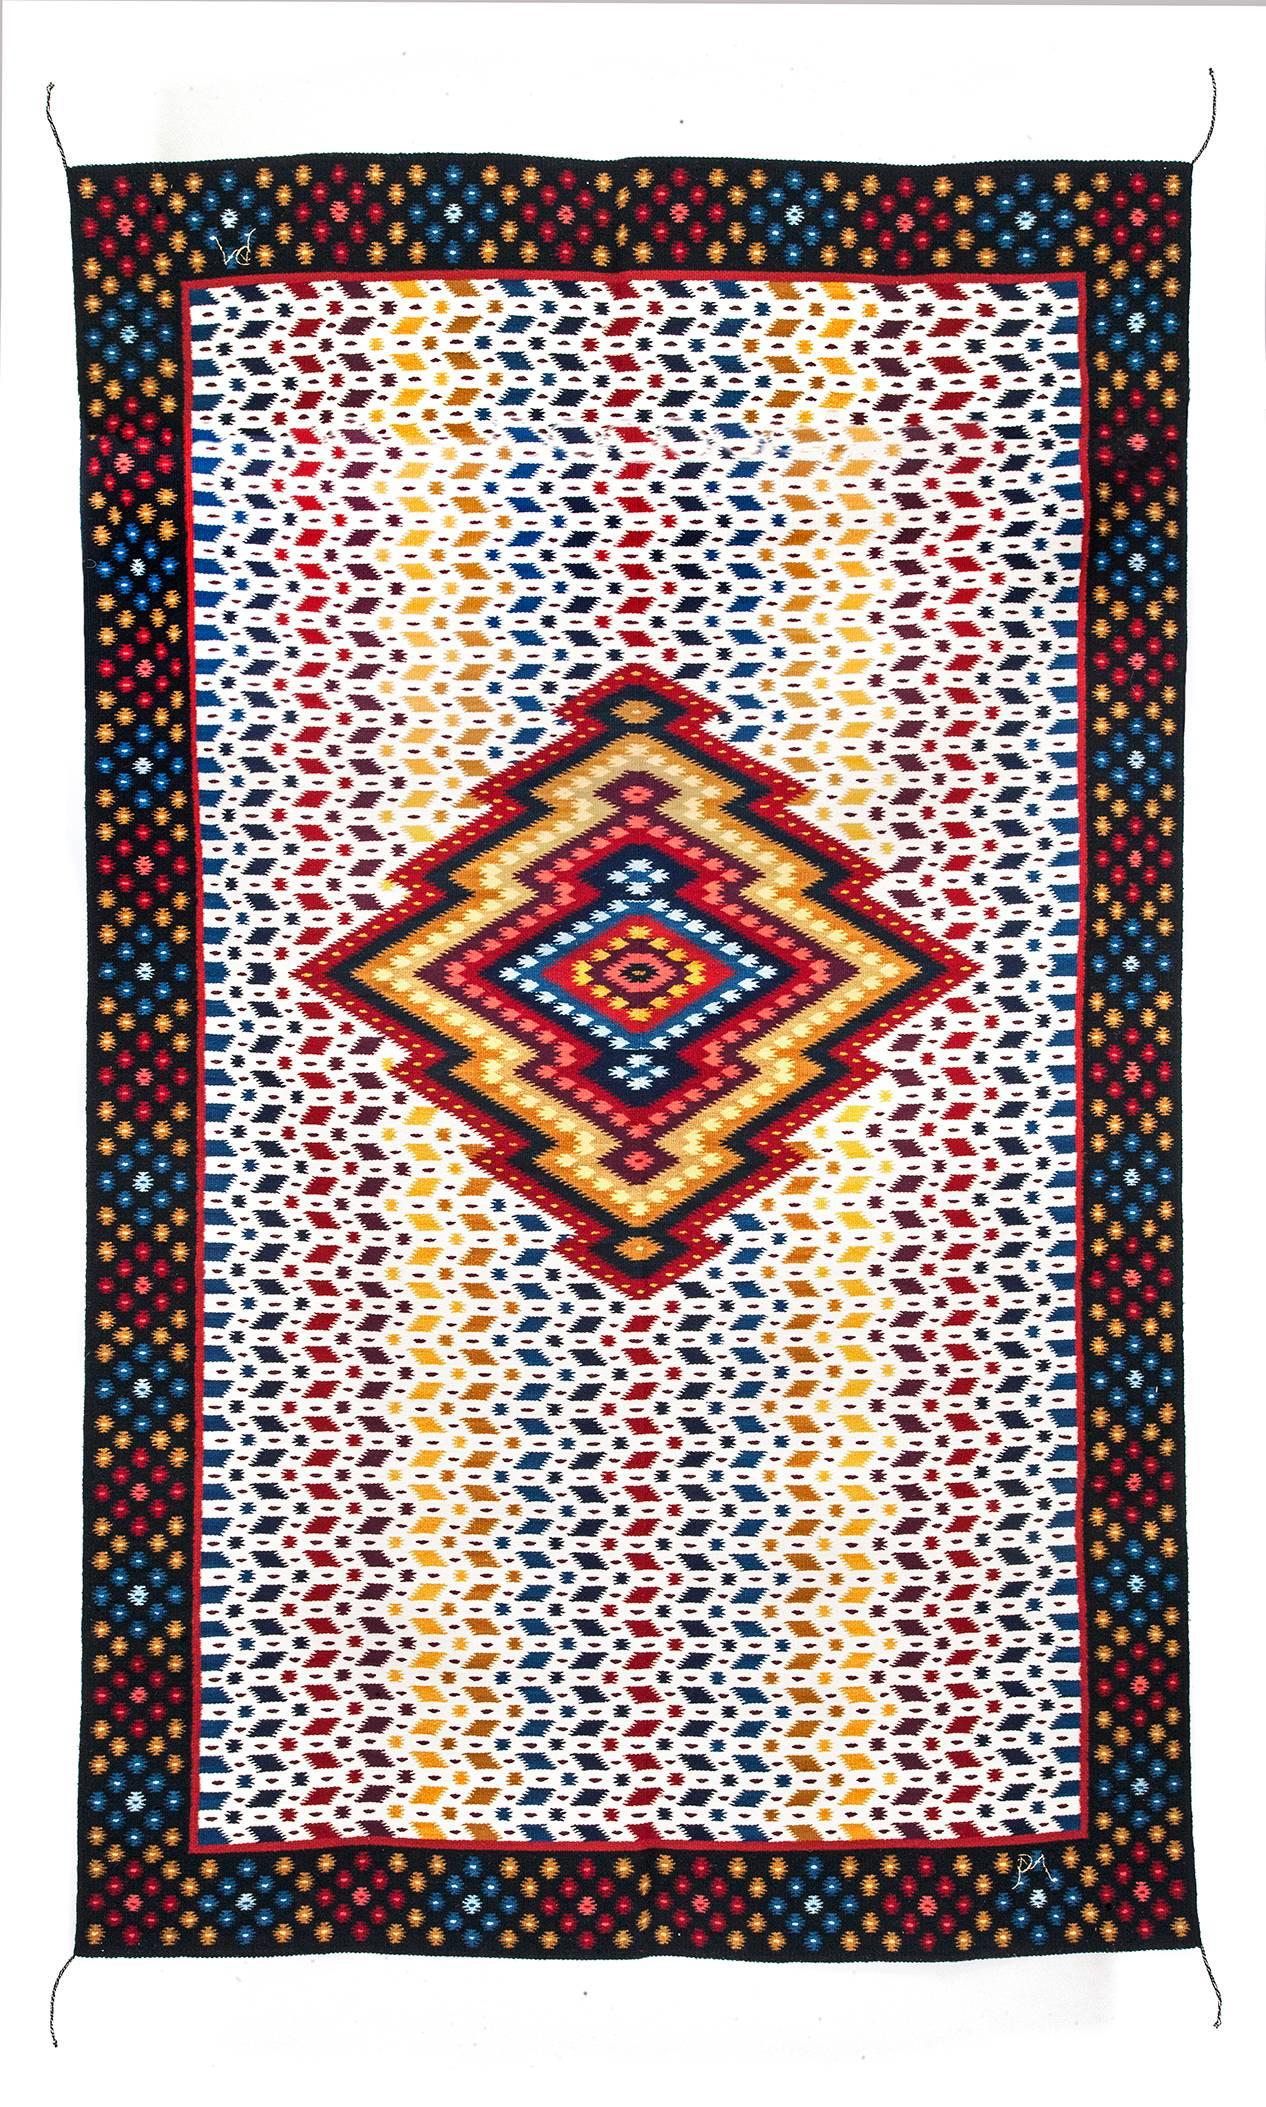 Diamante / Textiles Mexican Folk Art Rug